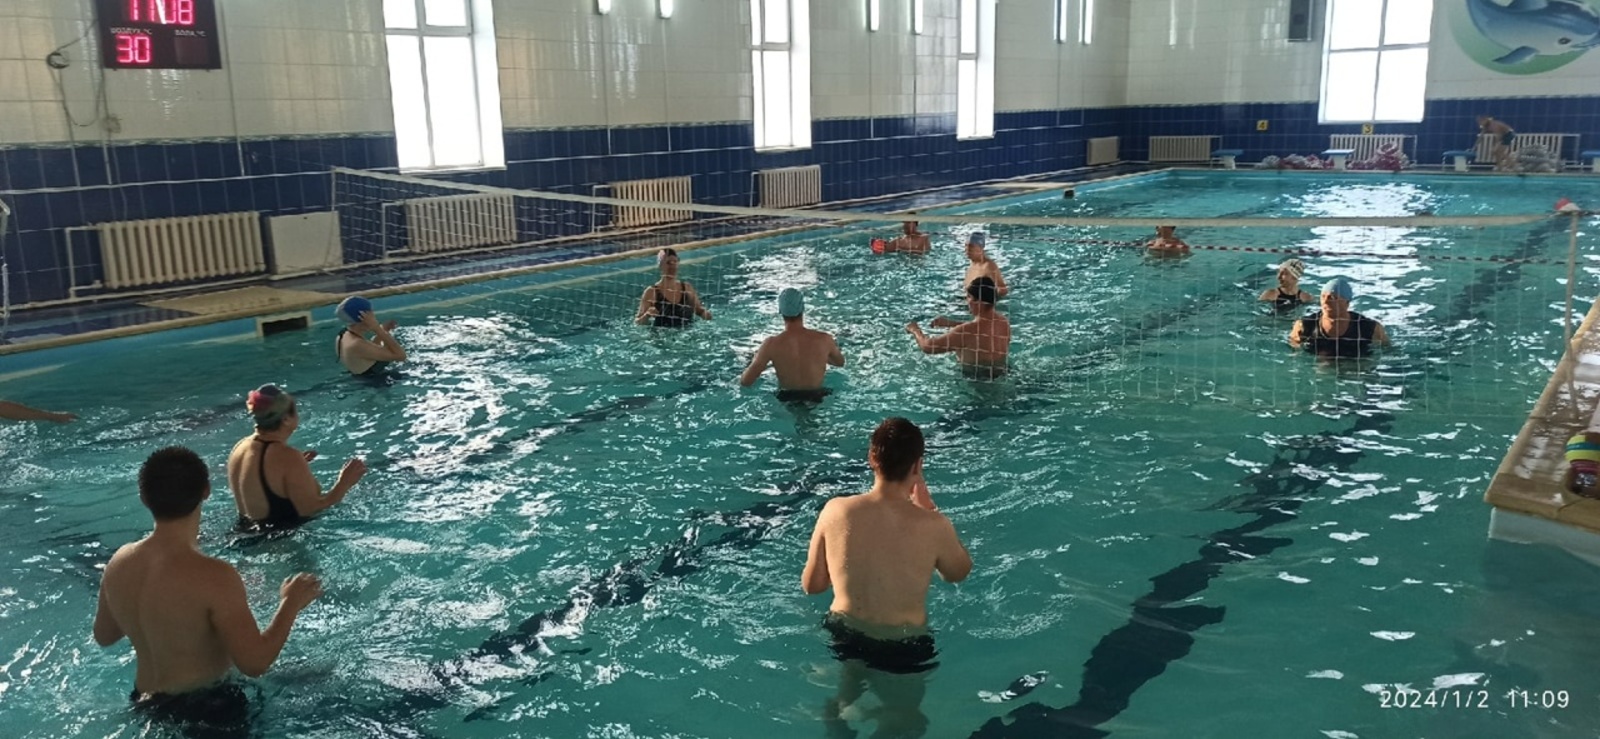 В Иглинском районе состоялся турнир по волейболу на воде